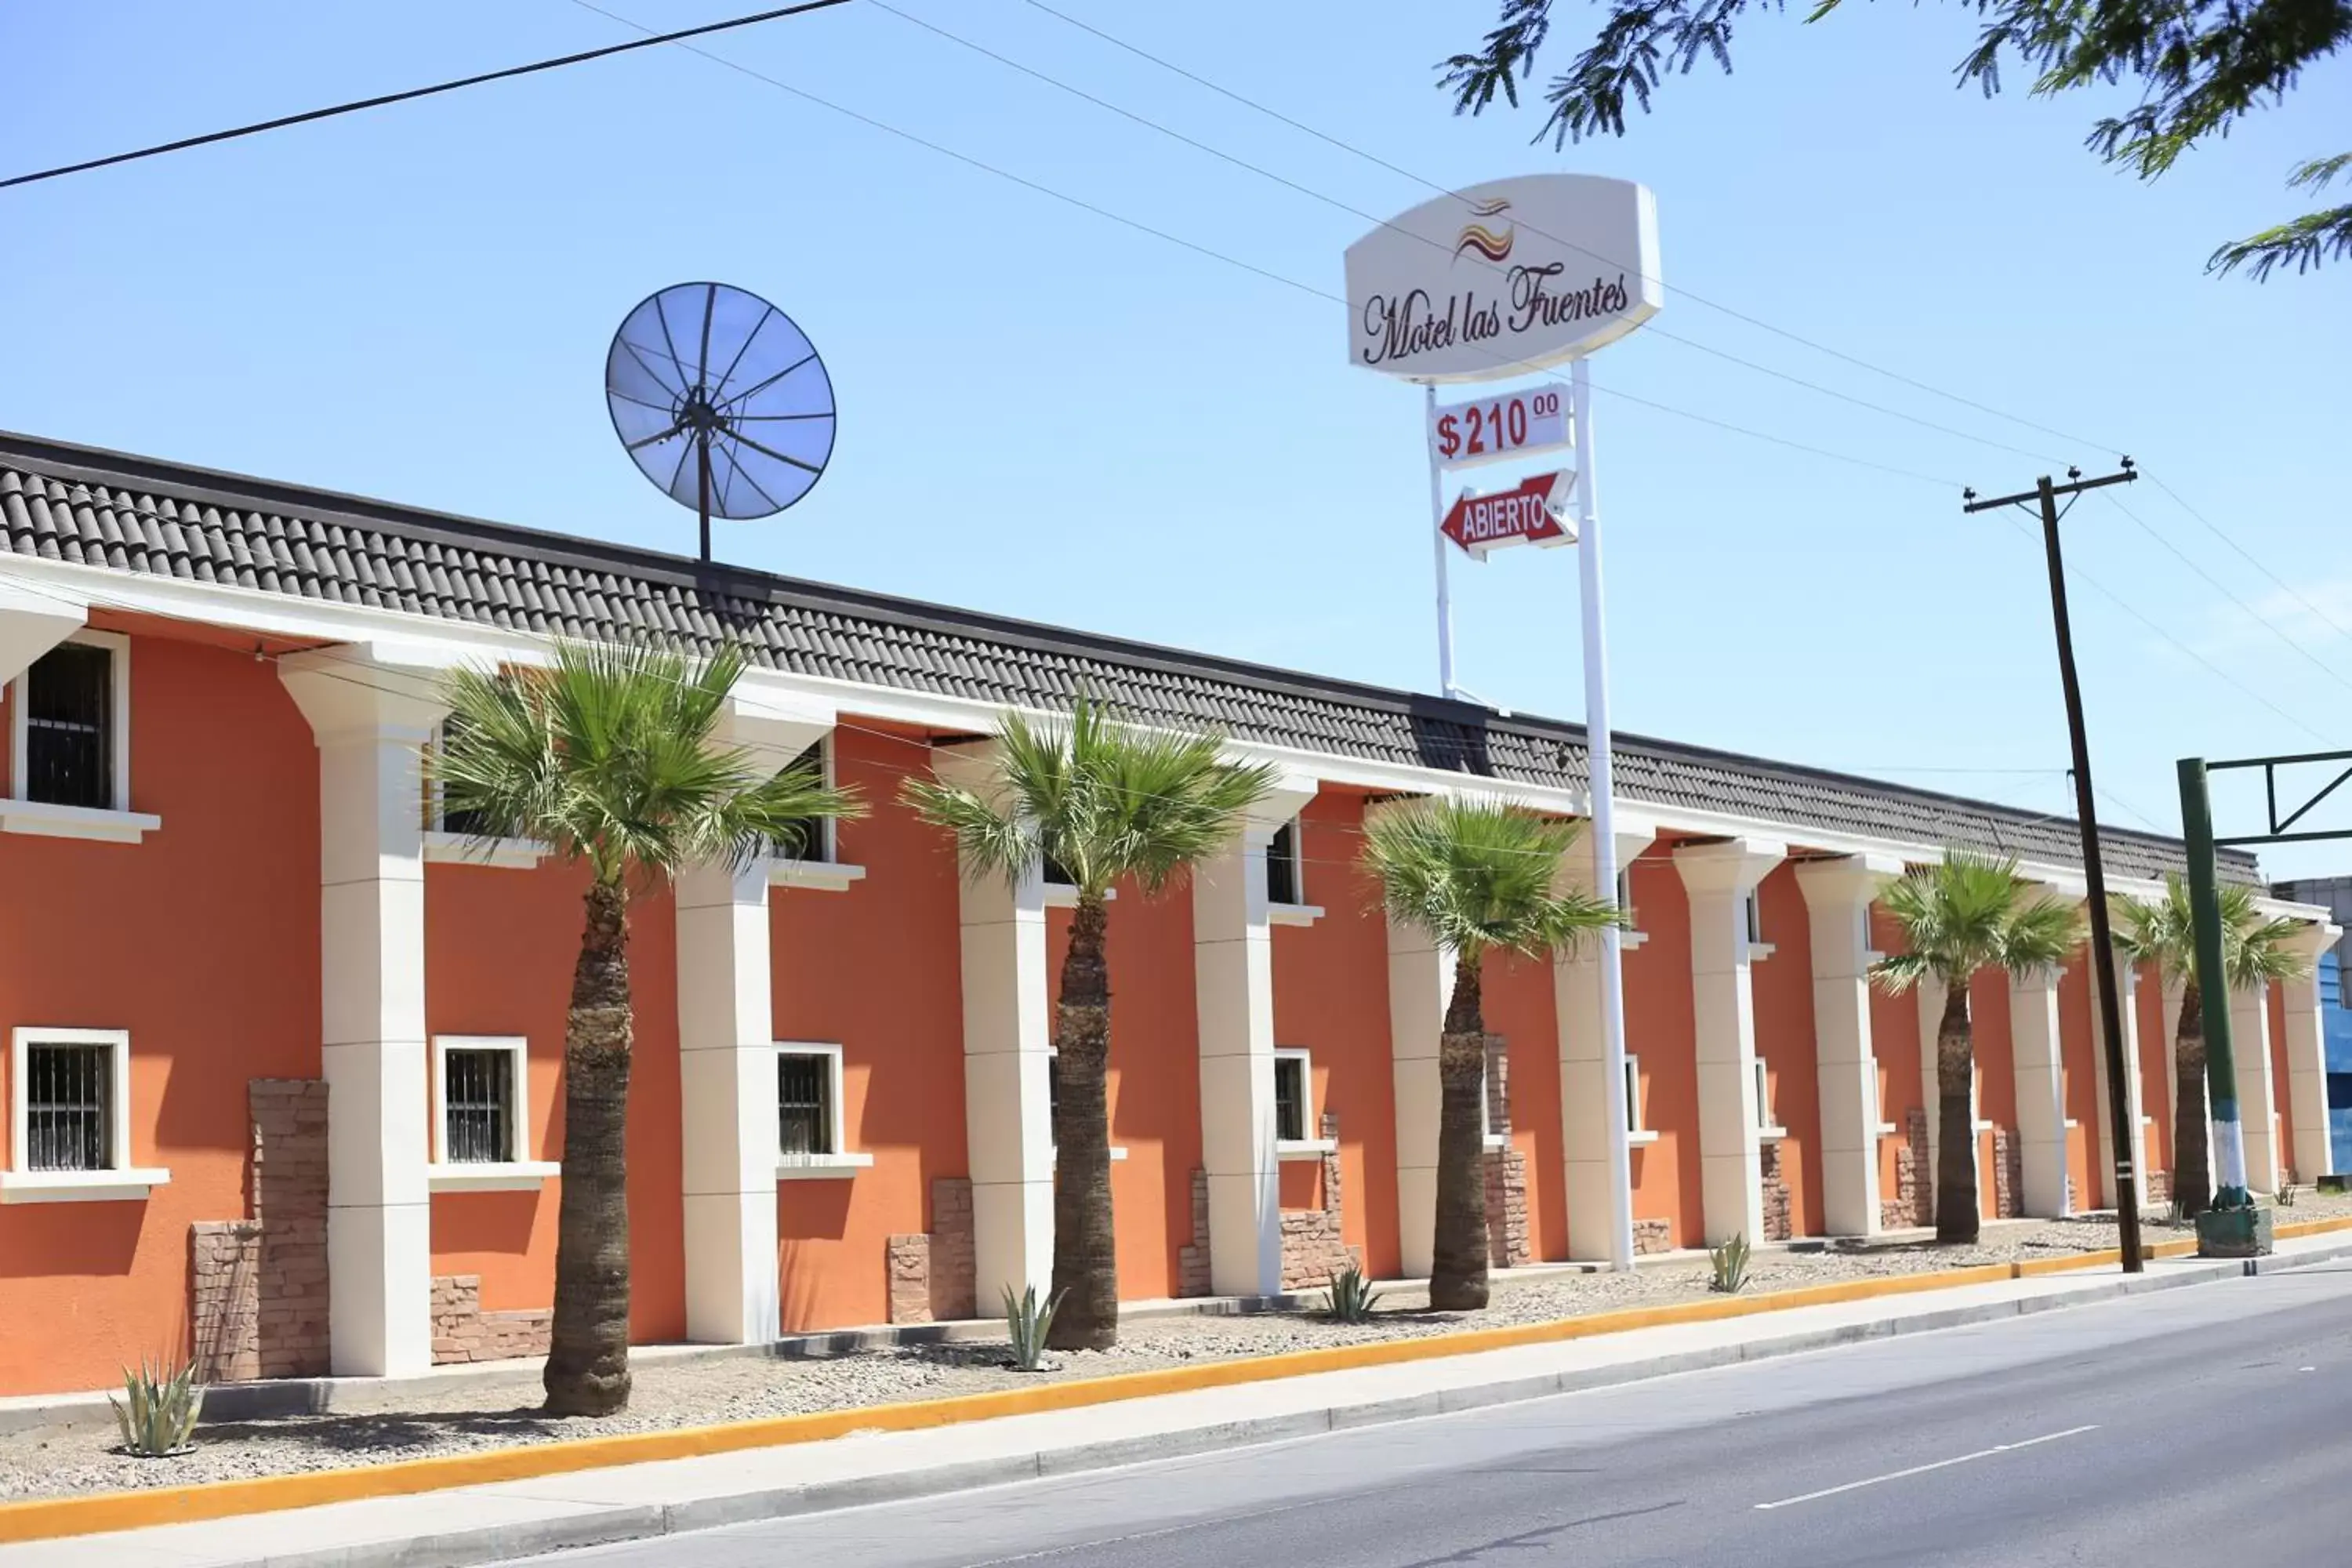 Off site, Property Building in Motel Las Fuentes